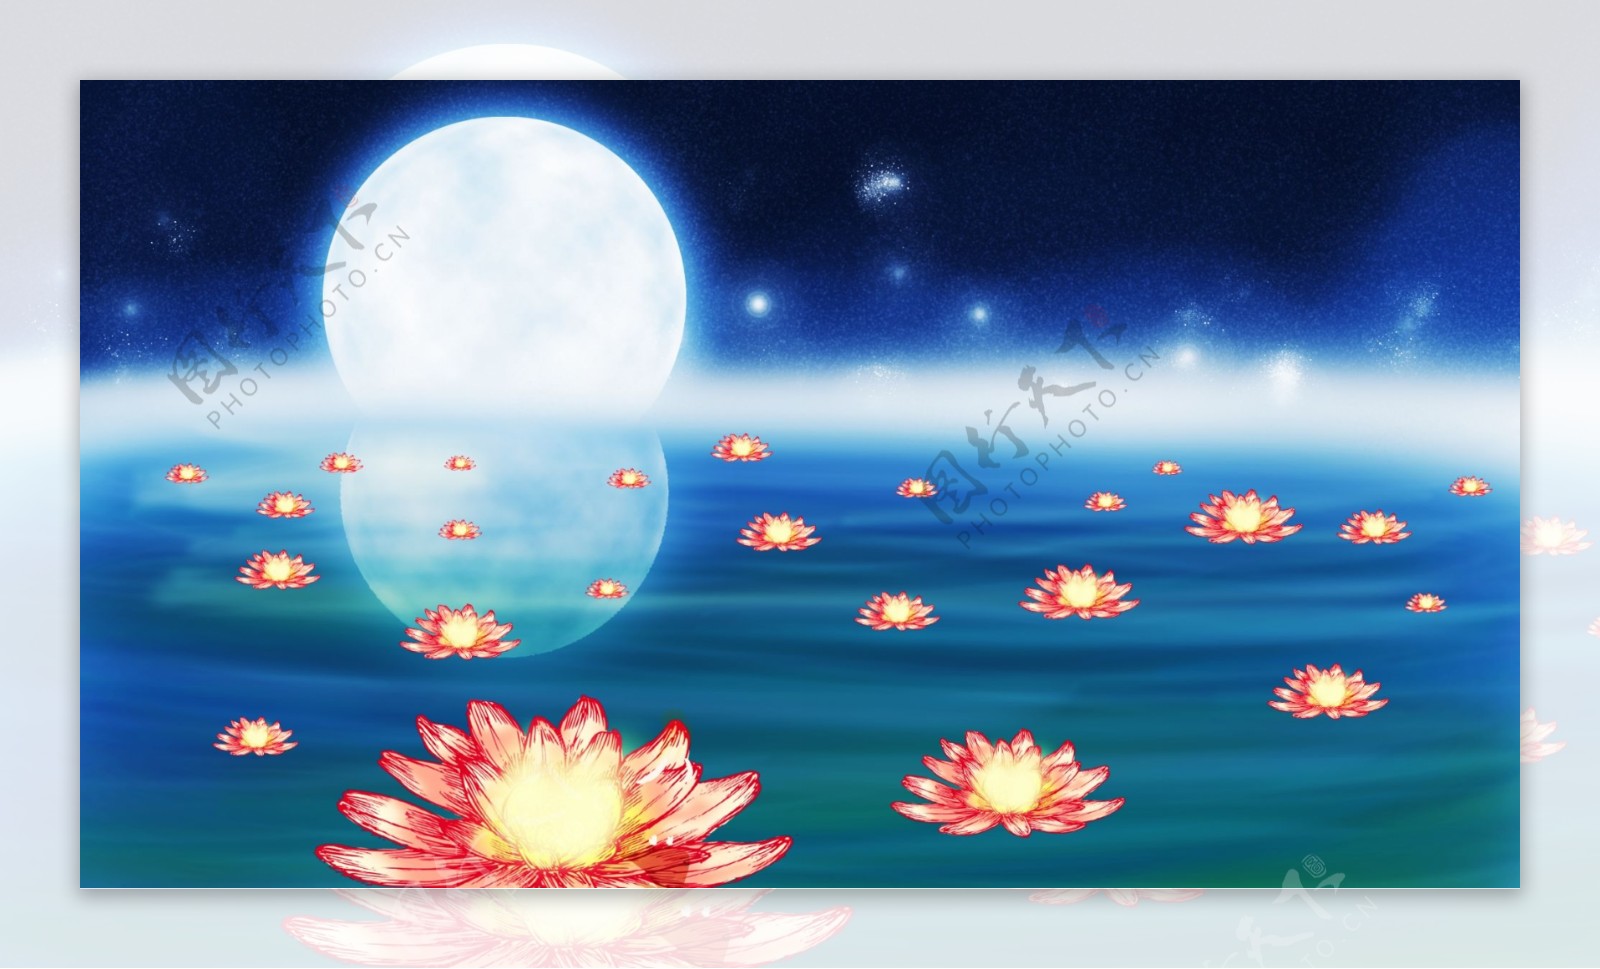 水面飘浮的莲花许愿灯明月卡通背景